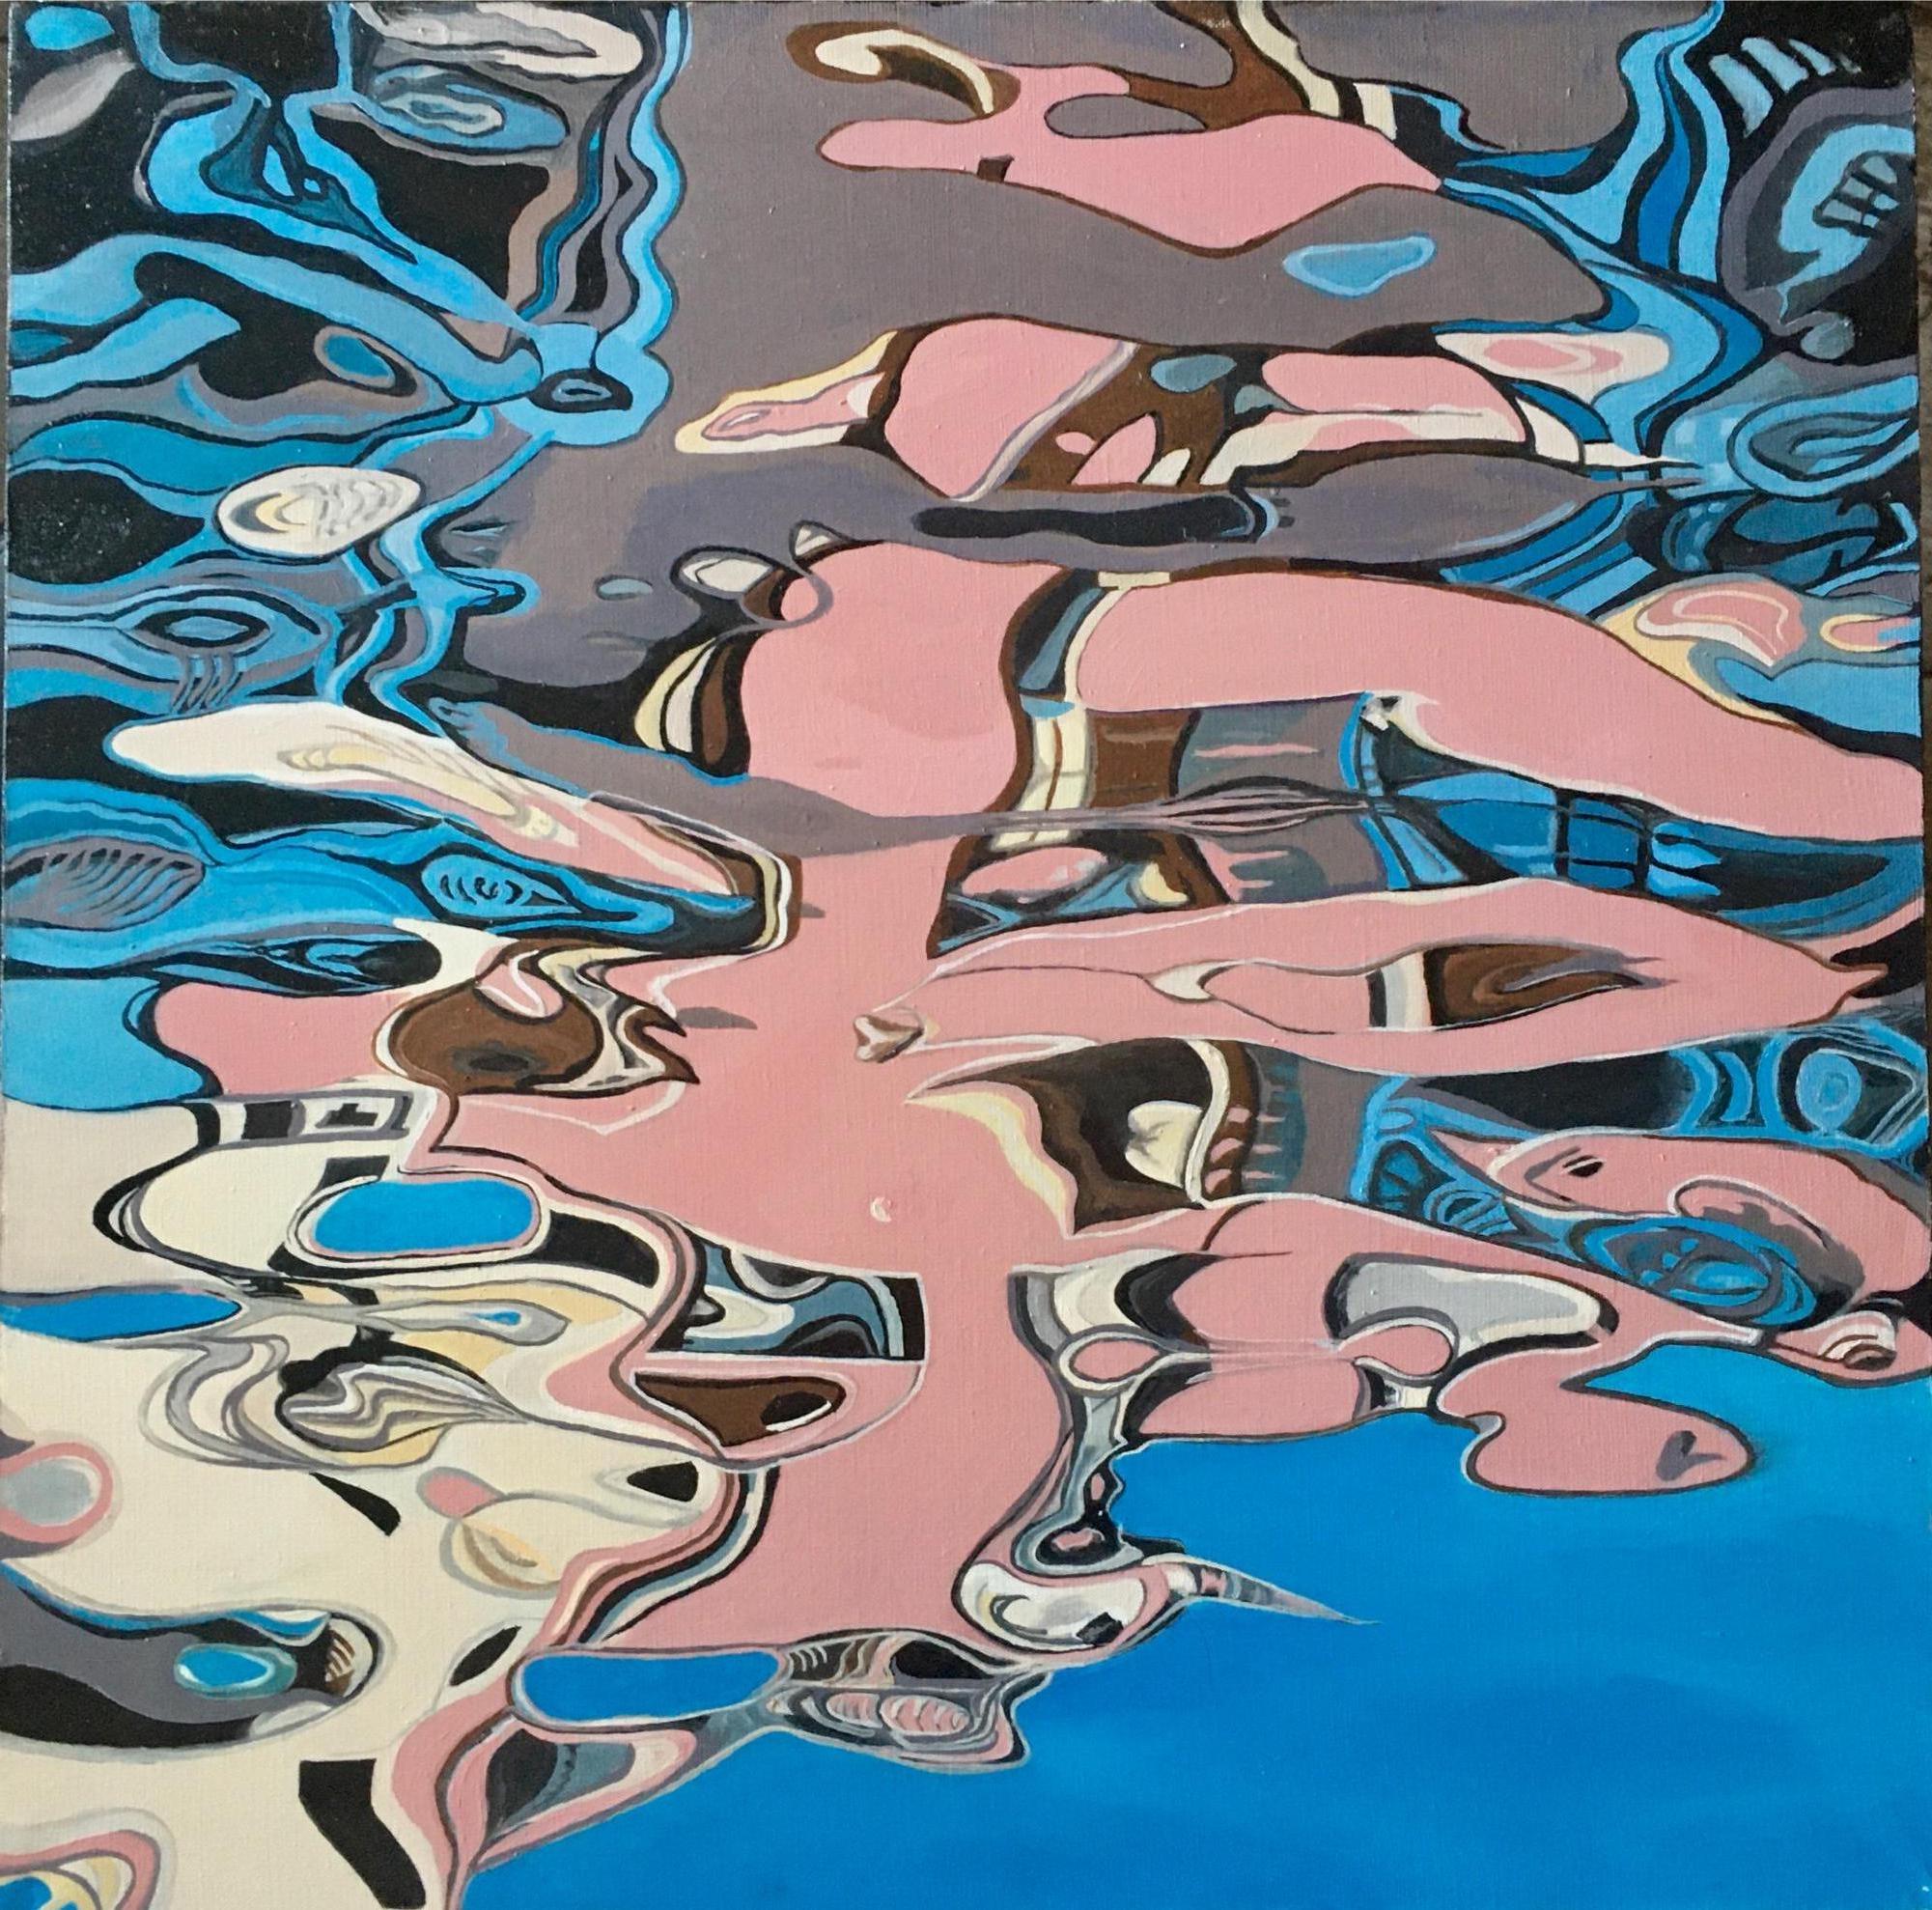 Reflection II-abstraktes Gemälde, in Himmelblau, Rosa, Beige, Grau und Grautönen gemalt – Painting von Galin R